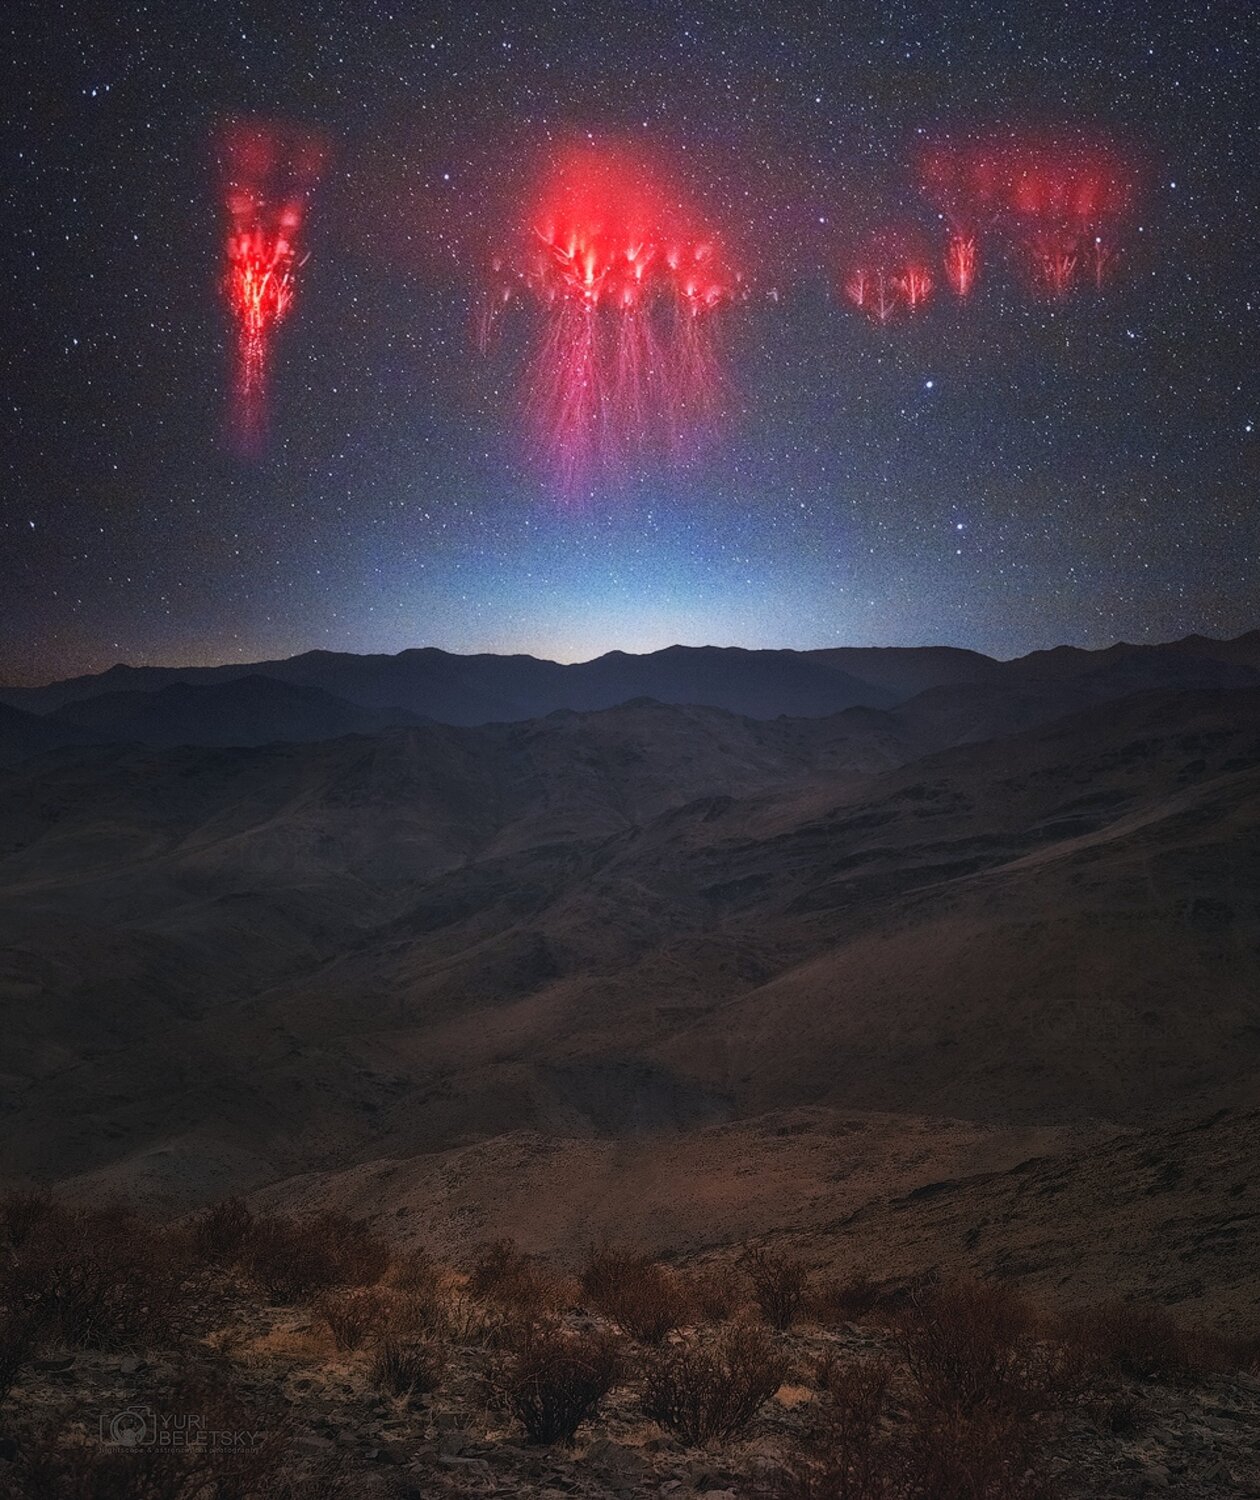 Capturan por primera vez «espectros rojos» sobre la cordillera de los Andes